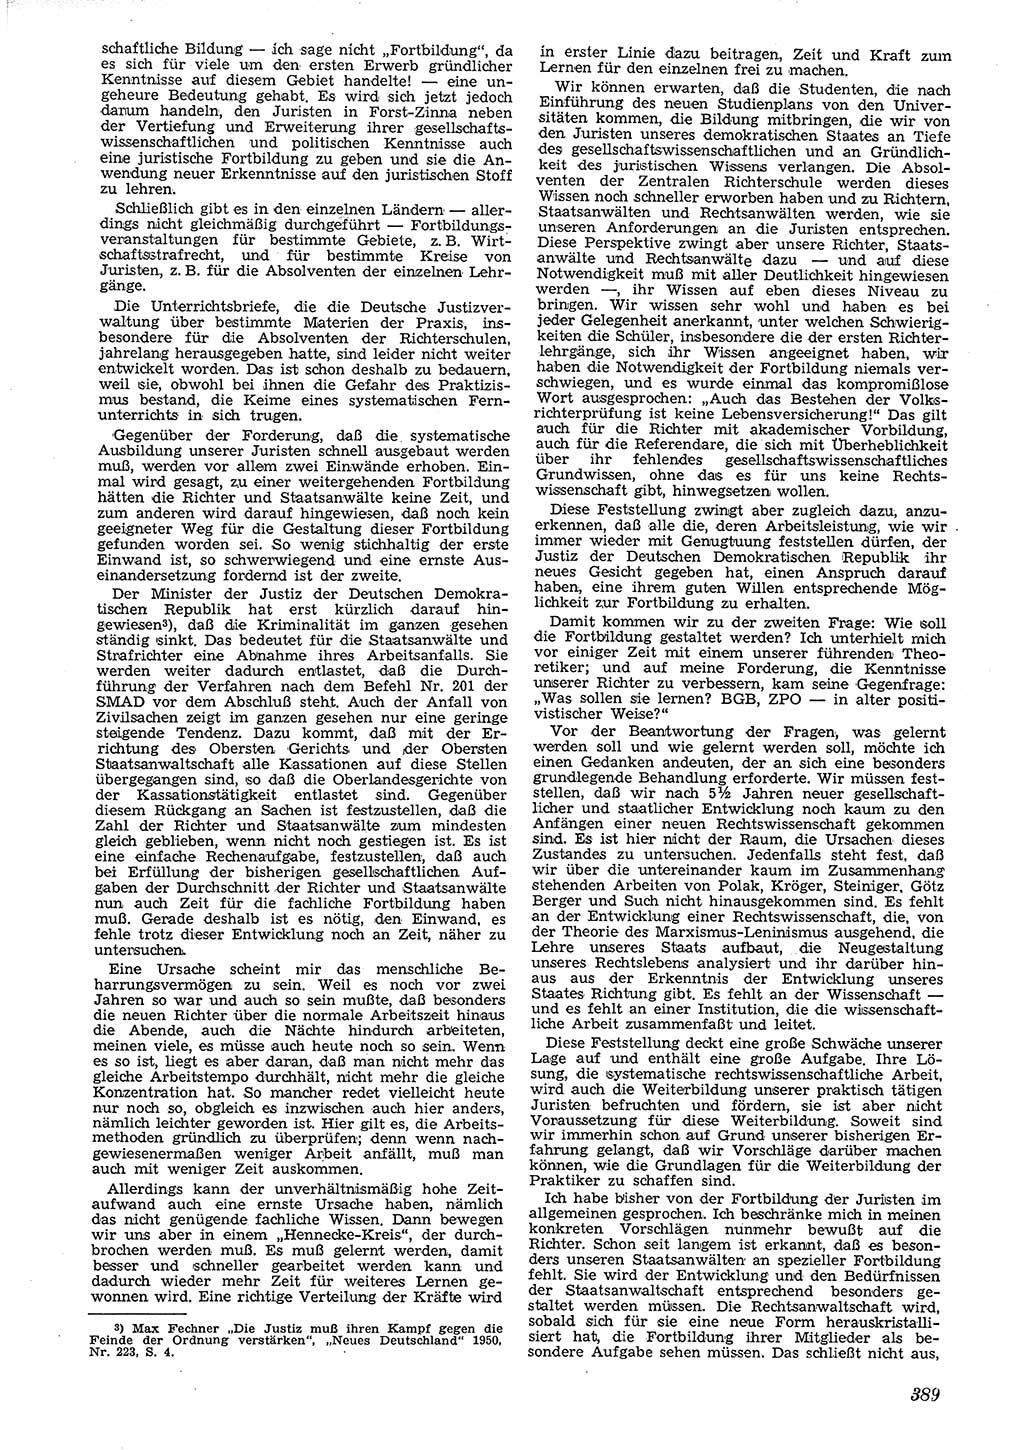 Neue Justiz (NJ), Zeitschrift für Recht und Rechtswissenschaft [Deutsche Demokratische Republik (DDR)], 4. Jahrgang 1950, Seite 389 (NJ DDR 1950, S. 389)